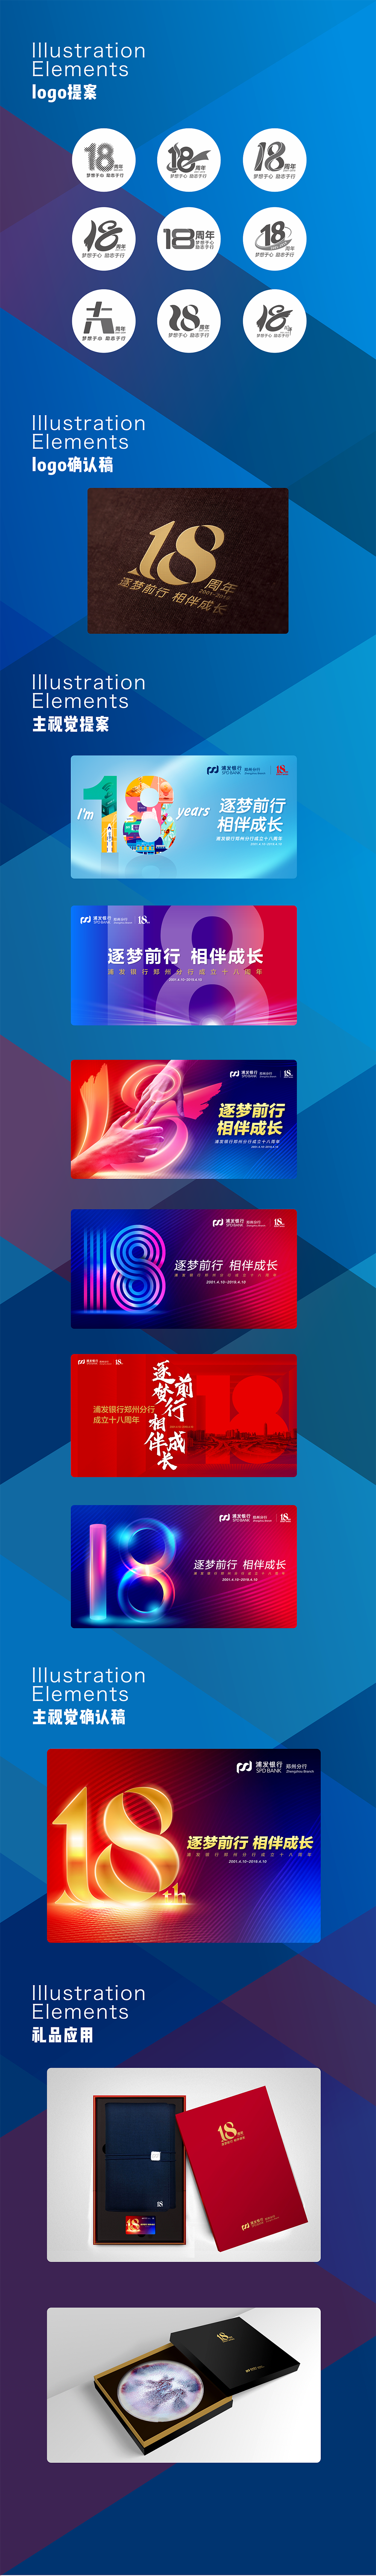 浦发银行郑州分行成立18周年logo及主视觉